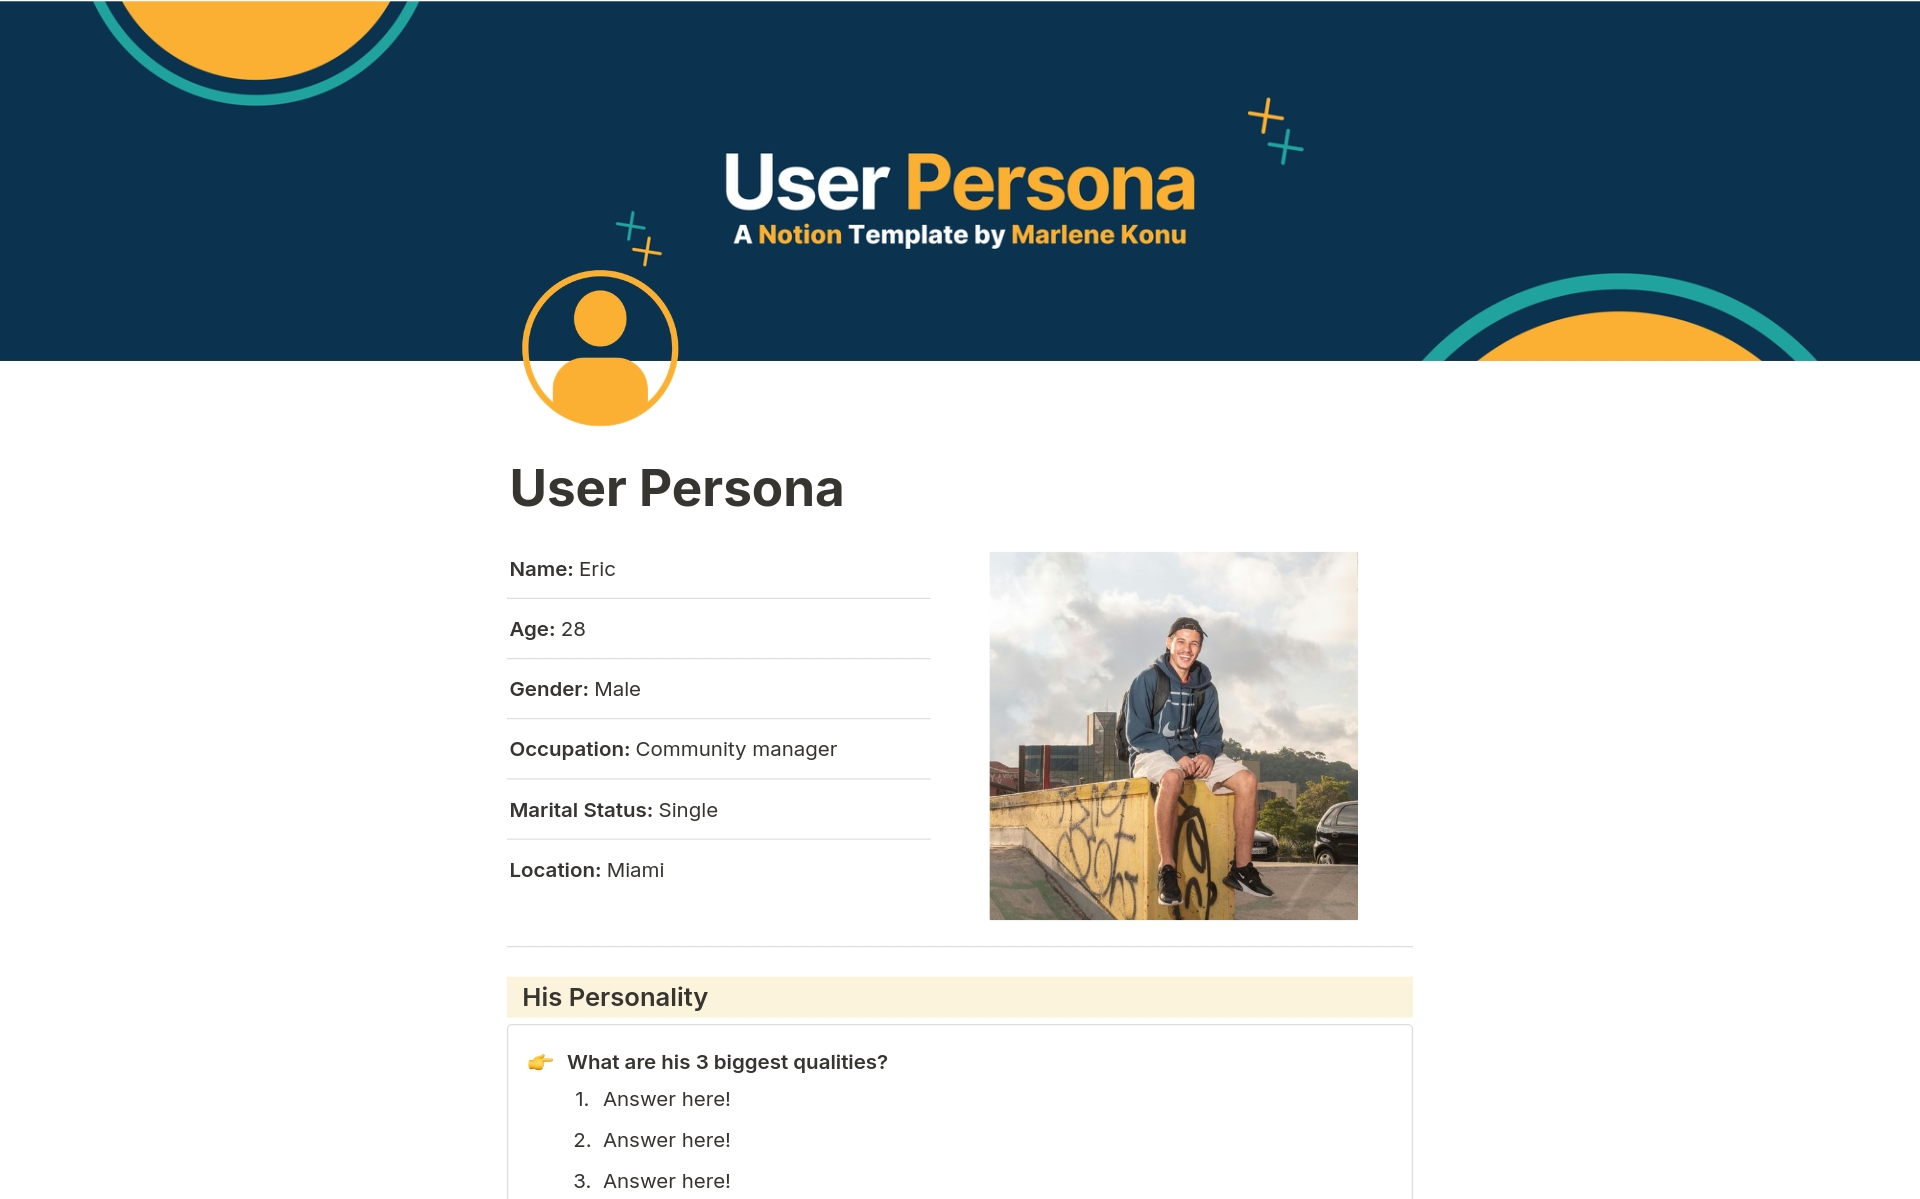 Vista previa de una plantilla para User Persona Notion Template & Workbook